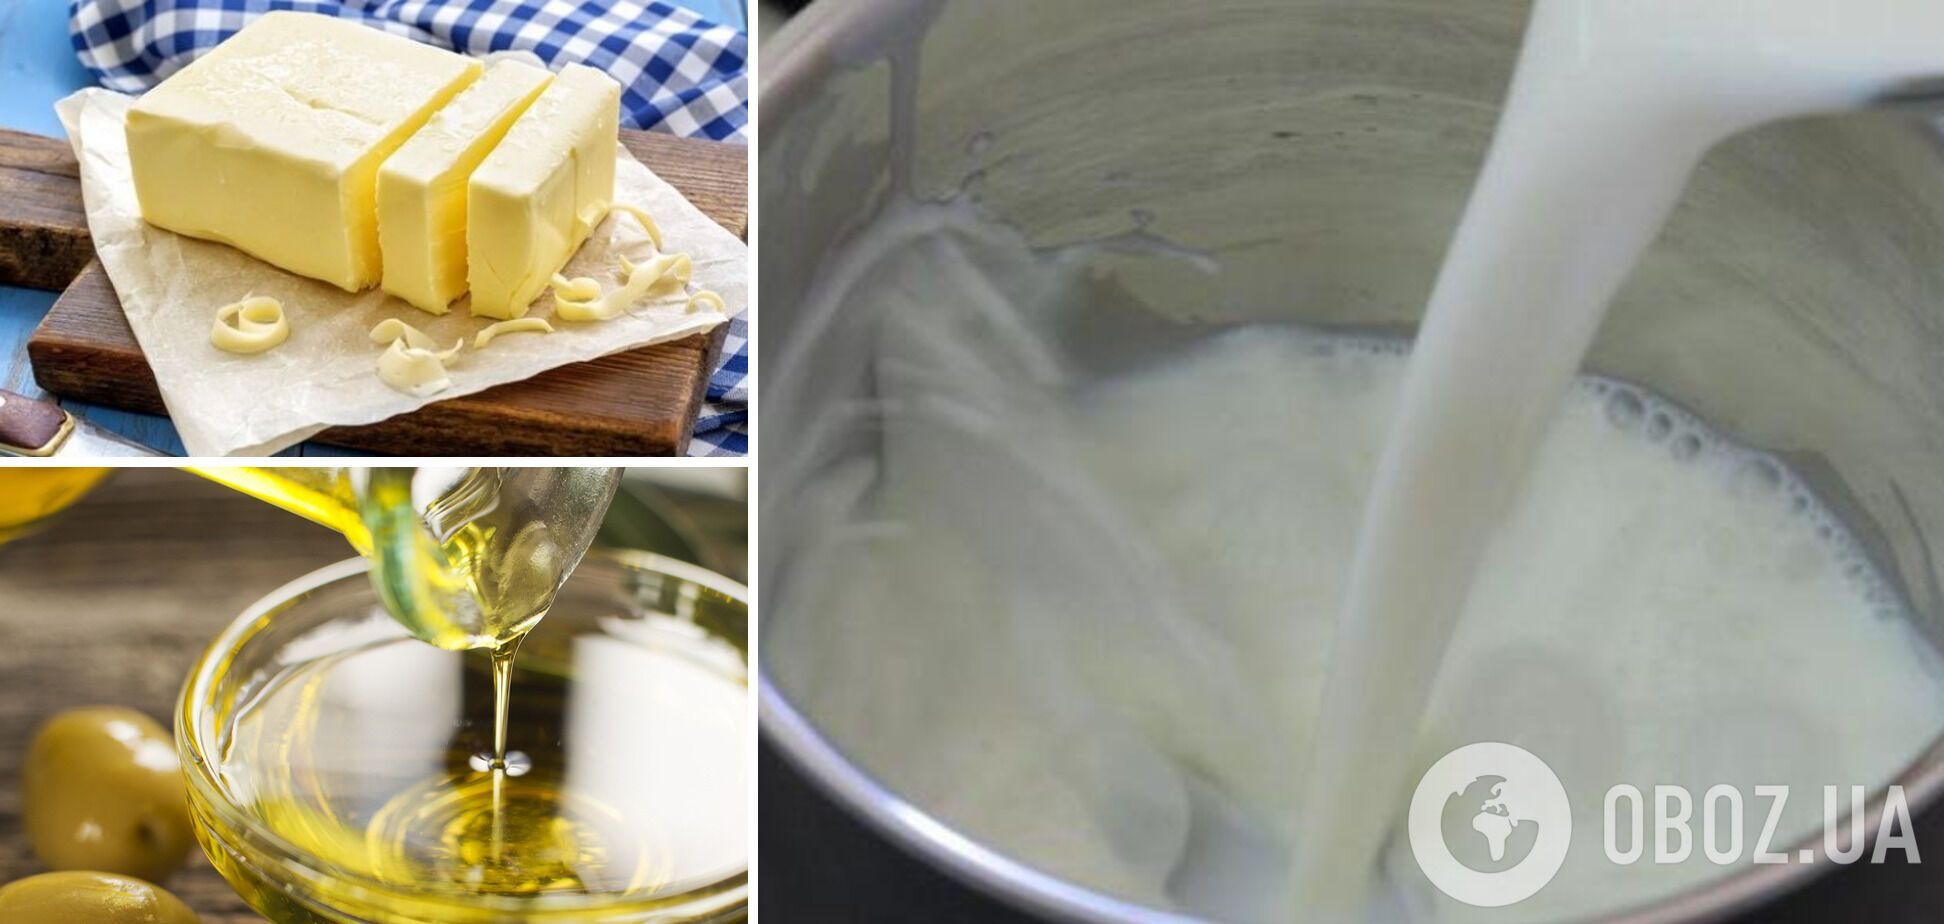 Избежать выкипания молока поможет сливочное или оливковое масло.